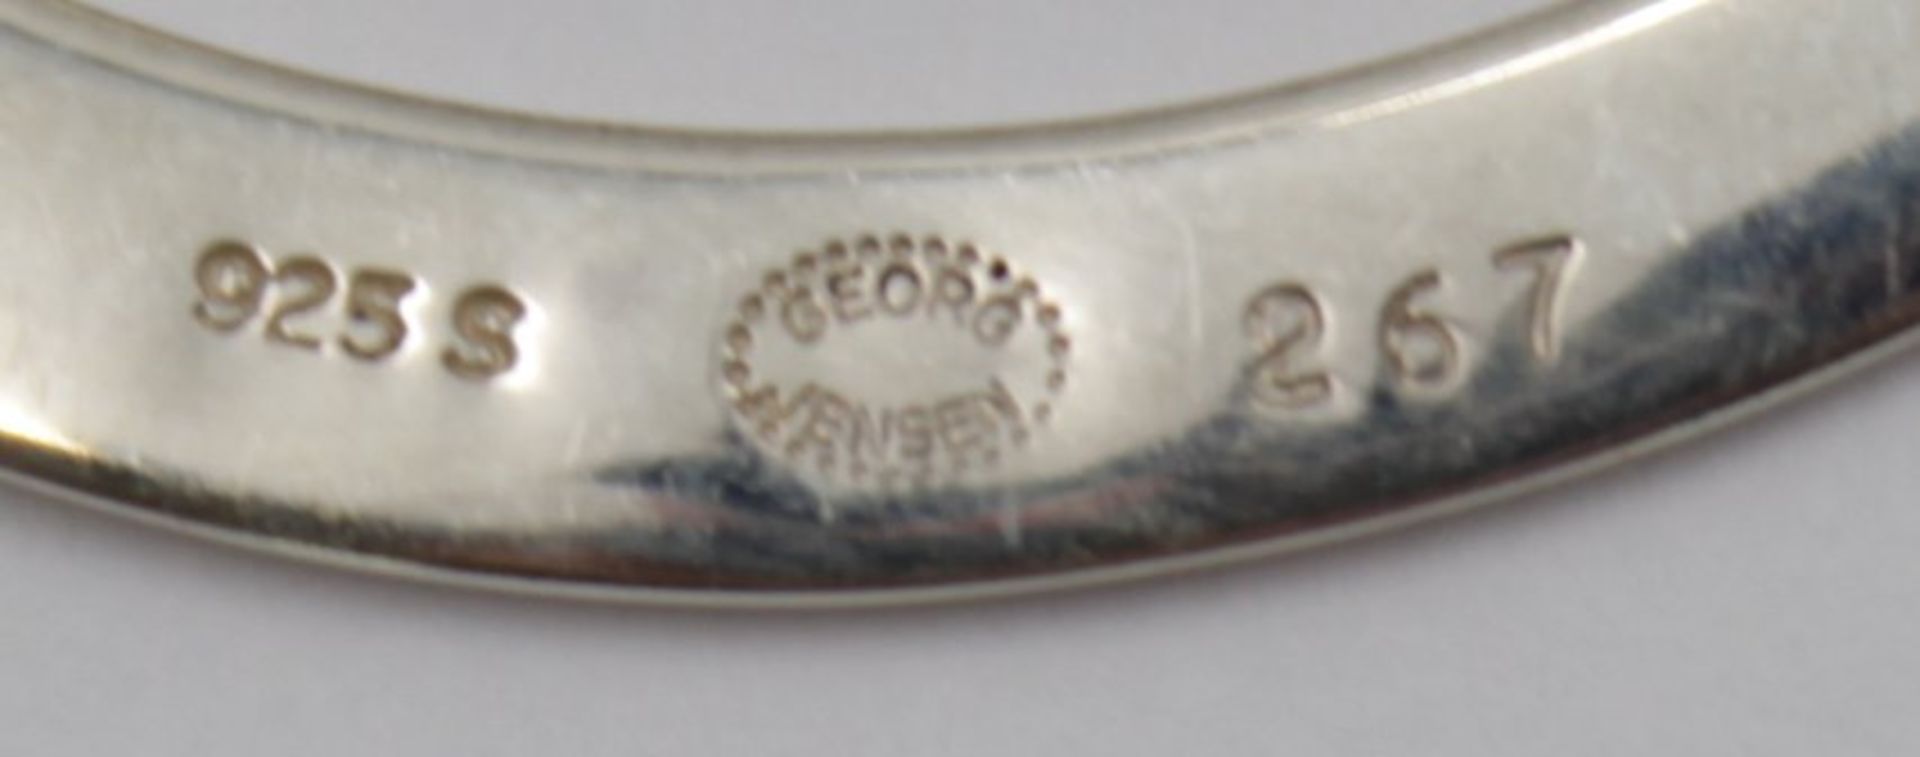 Geldklammer, Georg Jensen, Nr. 267, D-5cm, 18,1cm. - Bild 3 aus 3